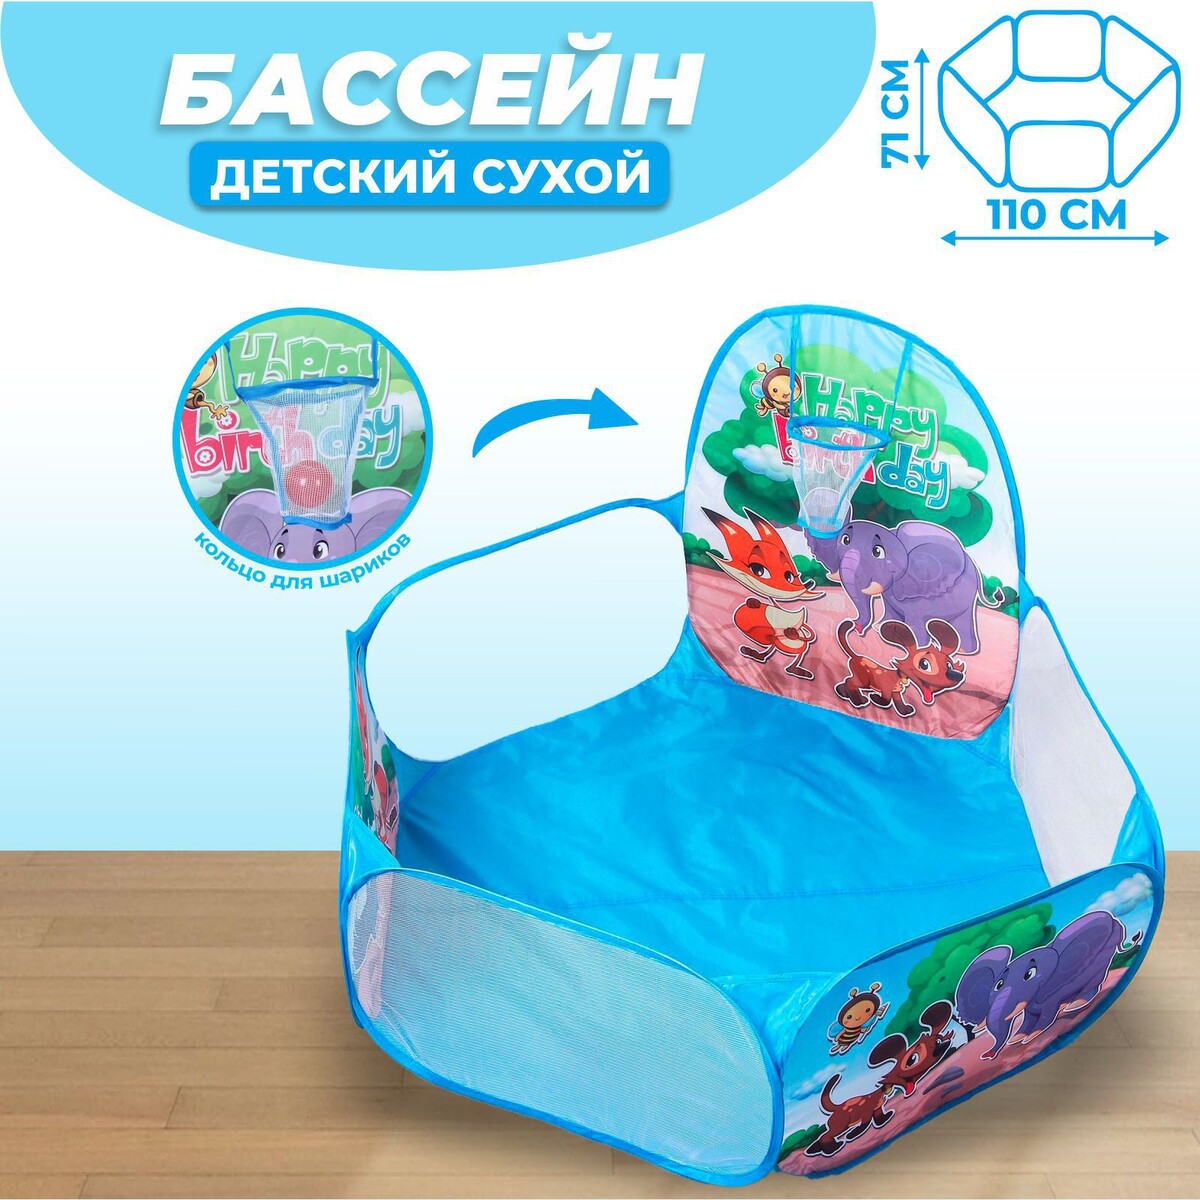 Палатка детская игровая - сухой бассейн для шариков сухой бассейн romana зверята дмф мк 02 52 01 100 шариков